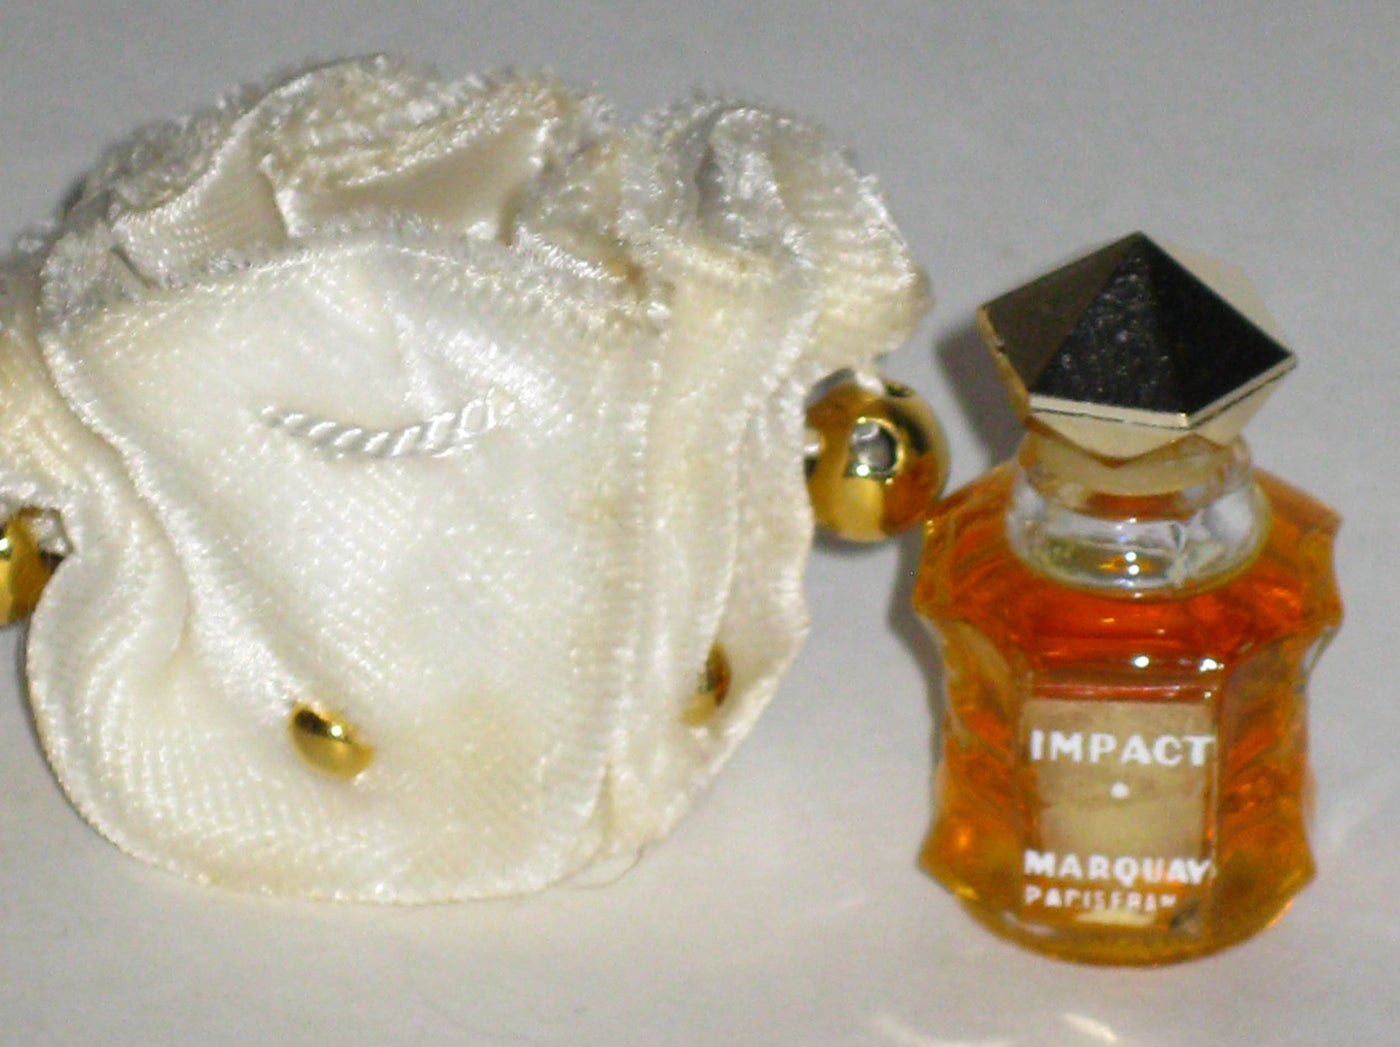 Marquay Impact Perfume Mini